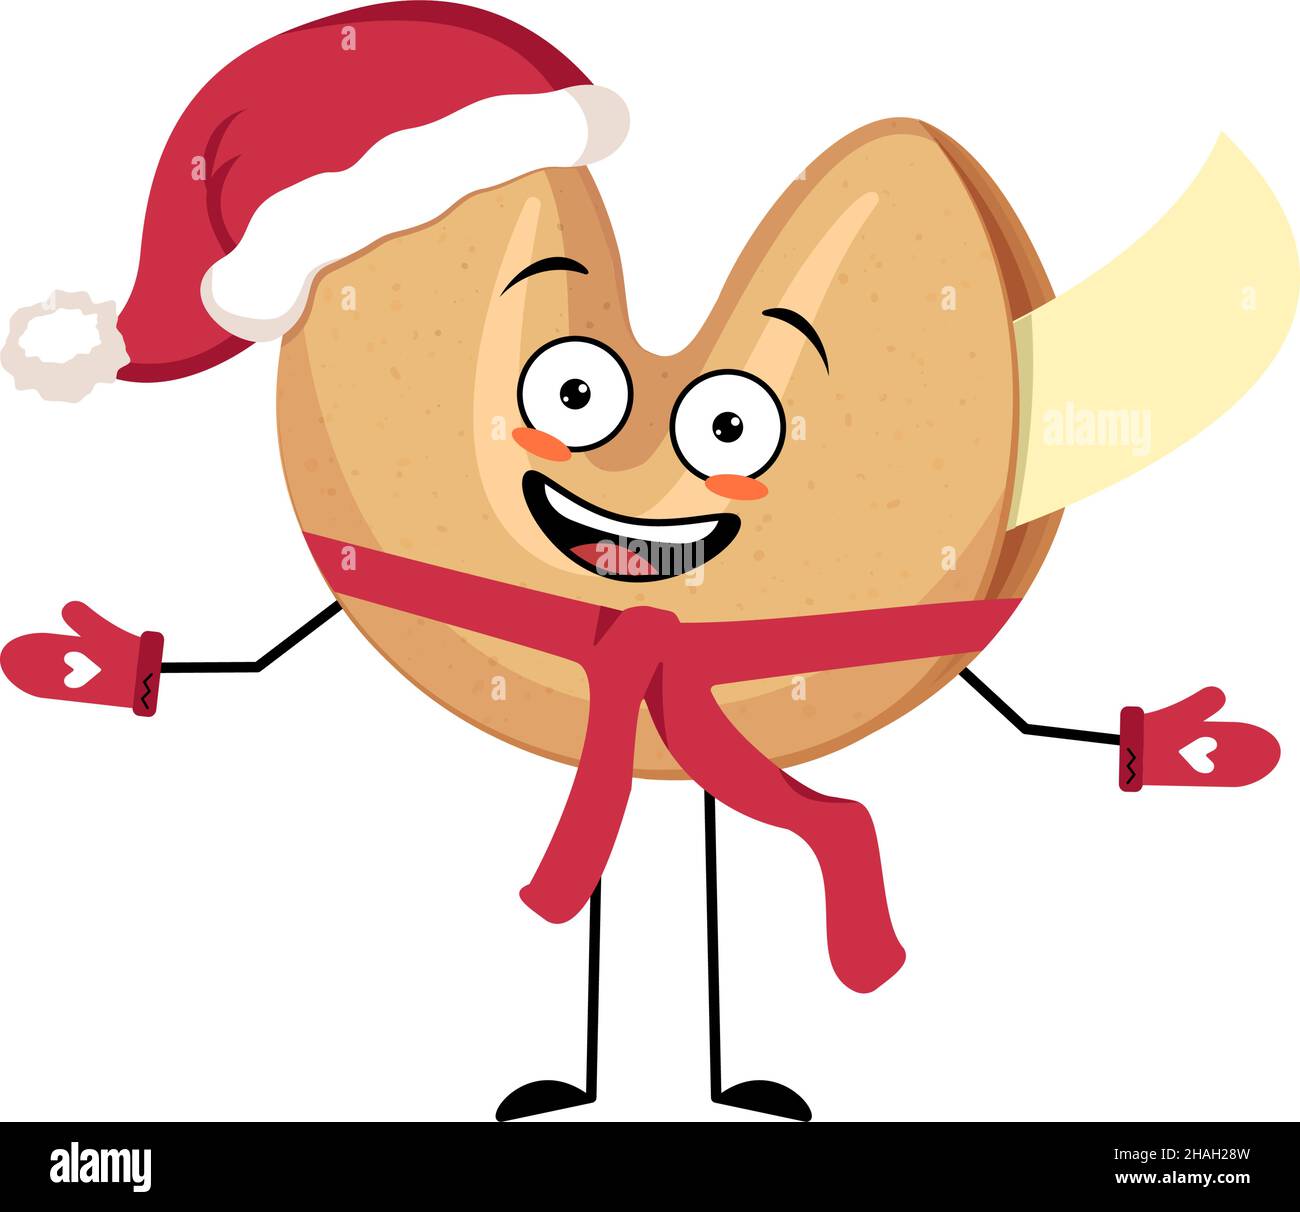 Biscotti di fortuna cinese carattere Santa con emozione felice, faccia gioiosa, occhi sorridenti, braccia e gambe con sciarpa e mitrens. Dolci natalizi per Natale e Capodanno. Illustrazione vettoriale Illustrazione Vettoriale